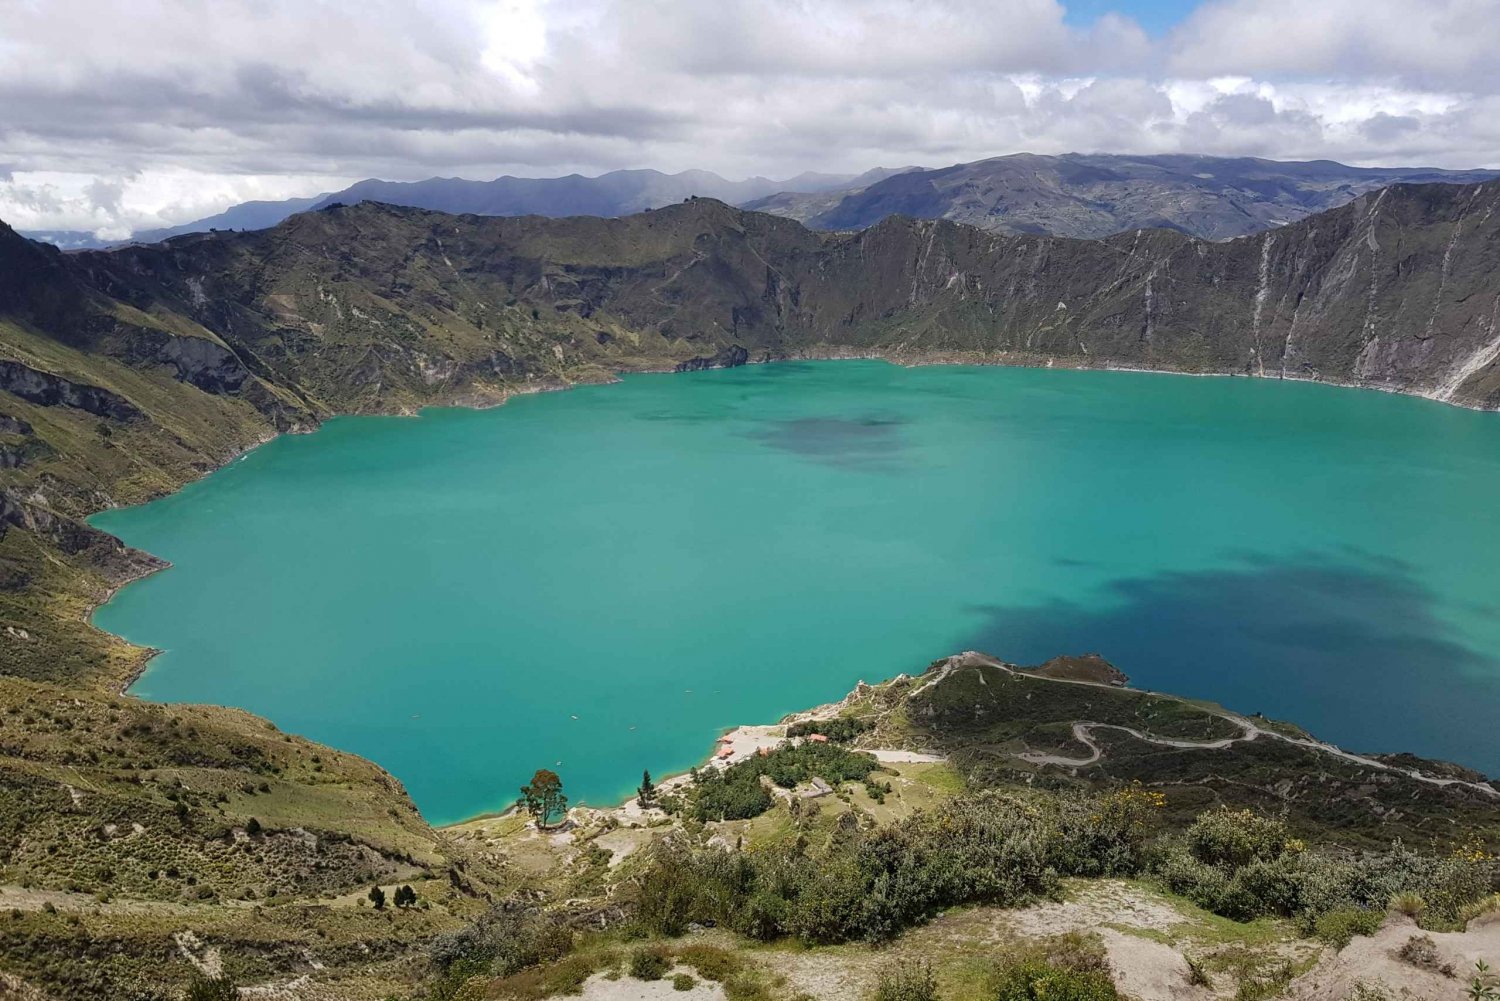 Excursión a la Laguna de Quilotoa: Incluye almuerzo y entrada